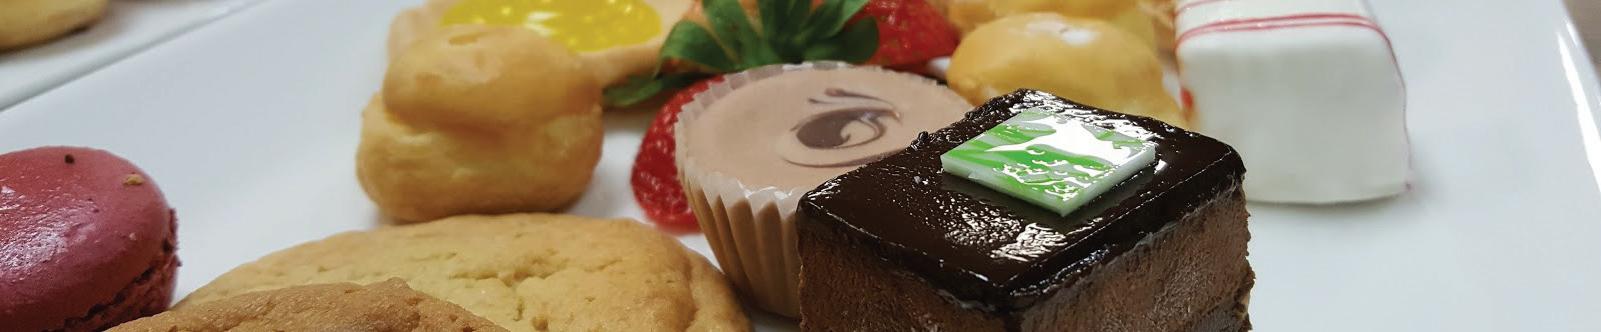 盘中有什锦小甜点. 布朗尼、巧克力、草莓和杏仁饼.